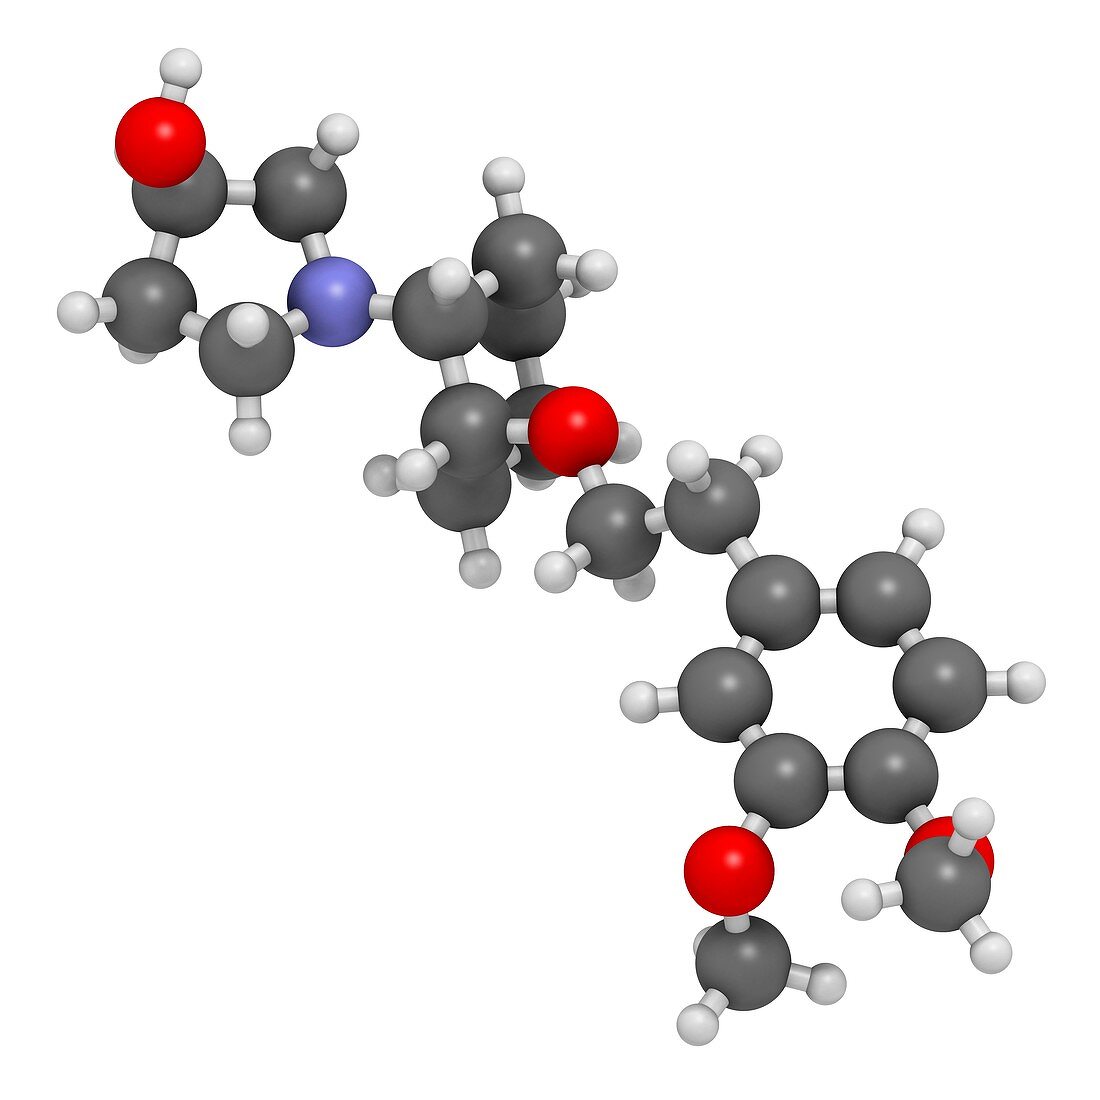 Vernakalant atrial fibrillation drug molecule